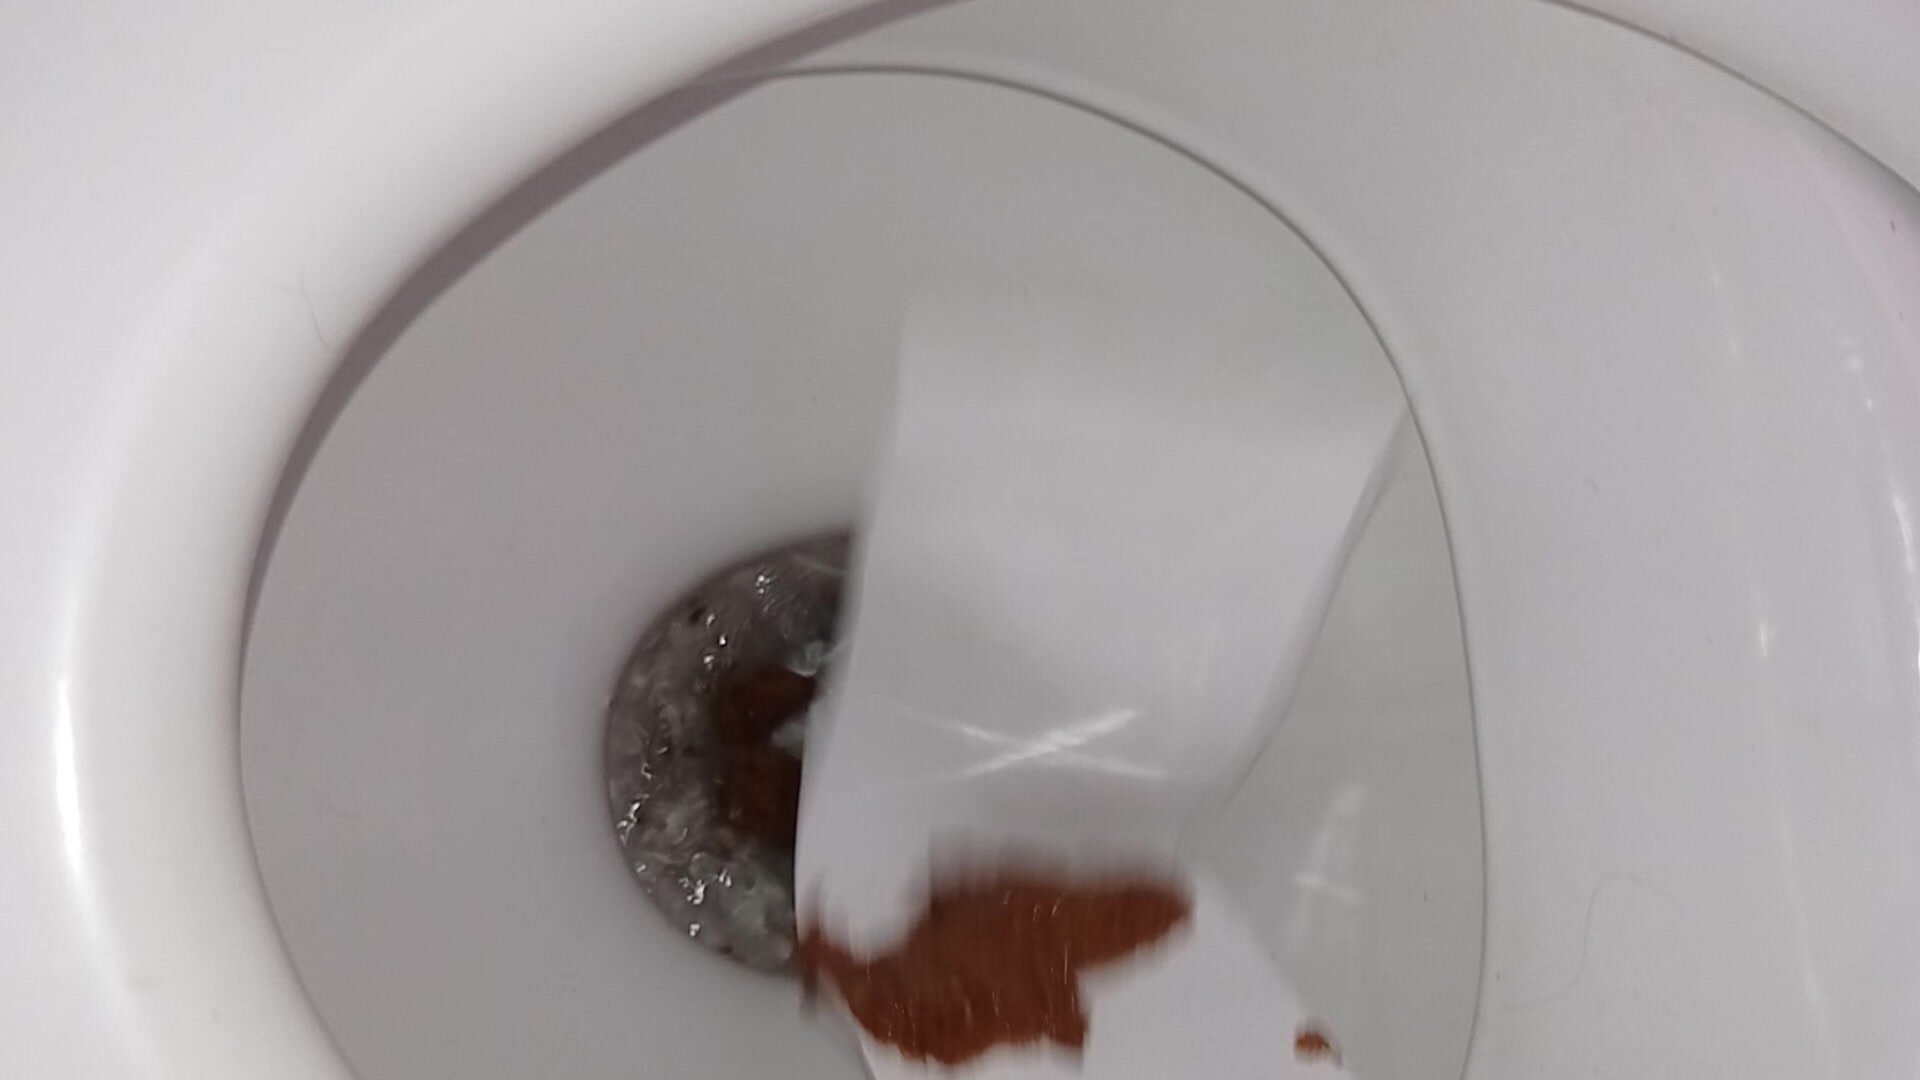 Sloppy toilet poop